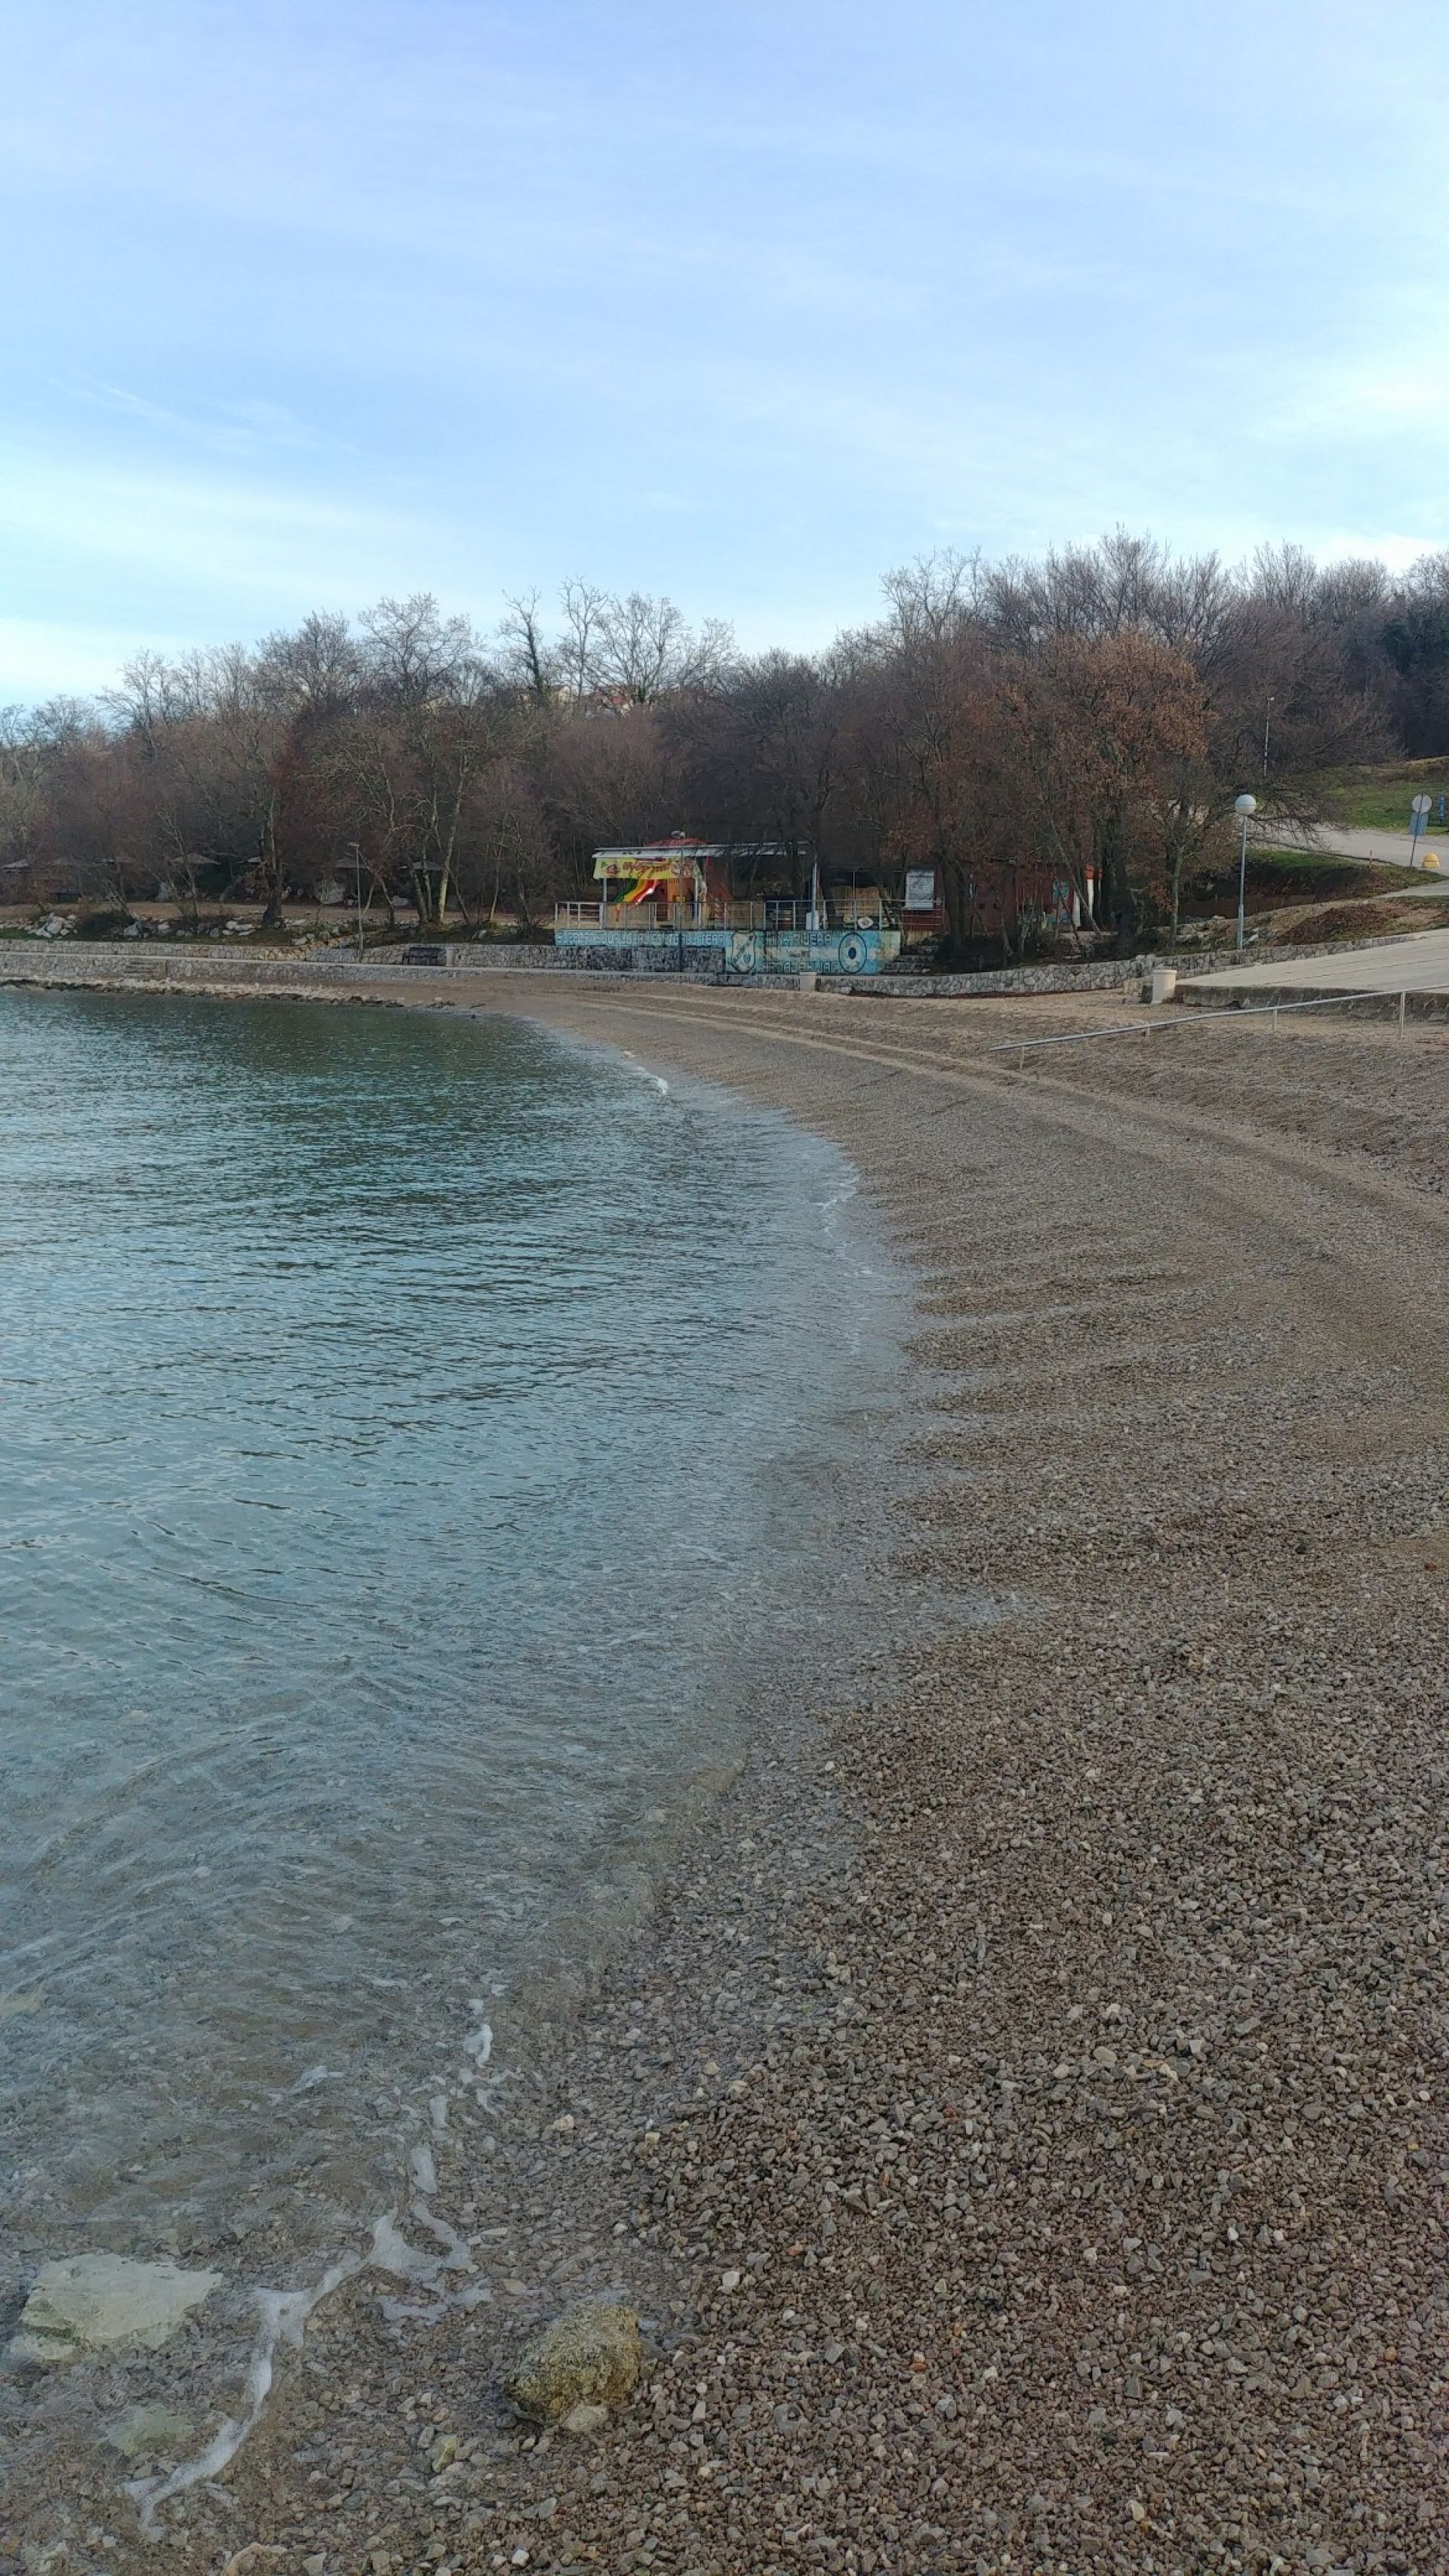 Zdjęcie Kijac beach z powierzchnią turkusowa czysta woda